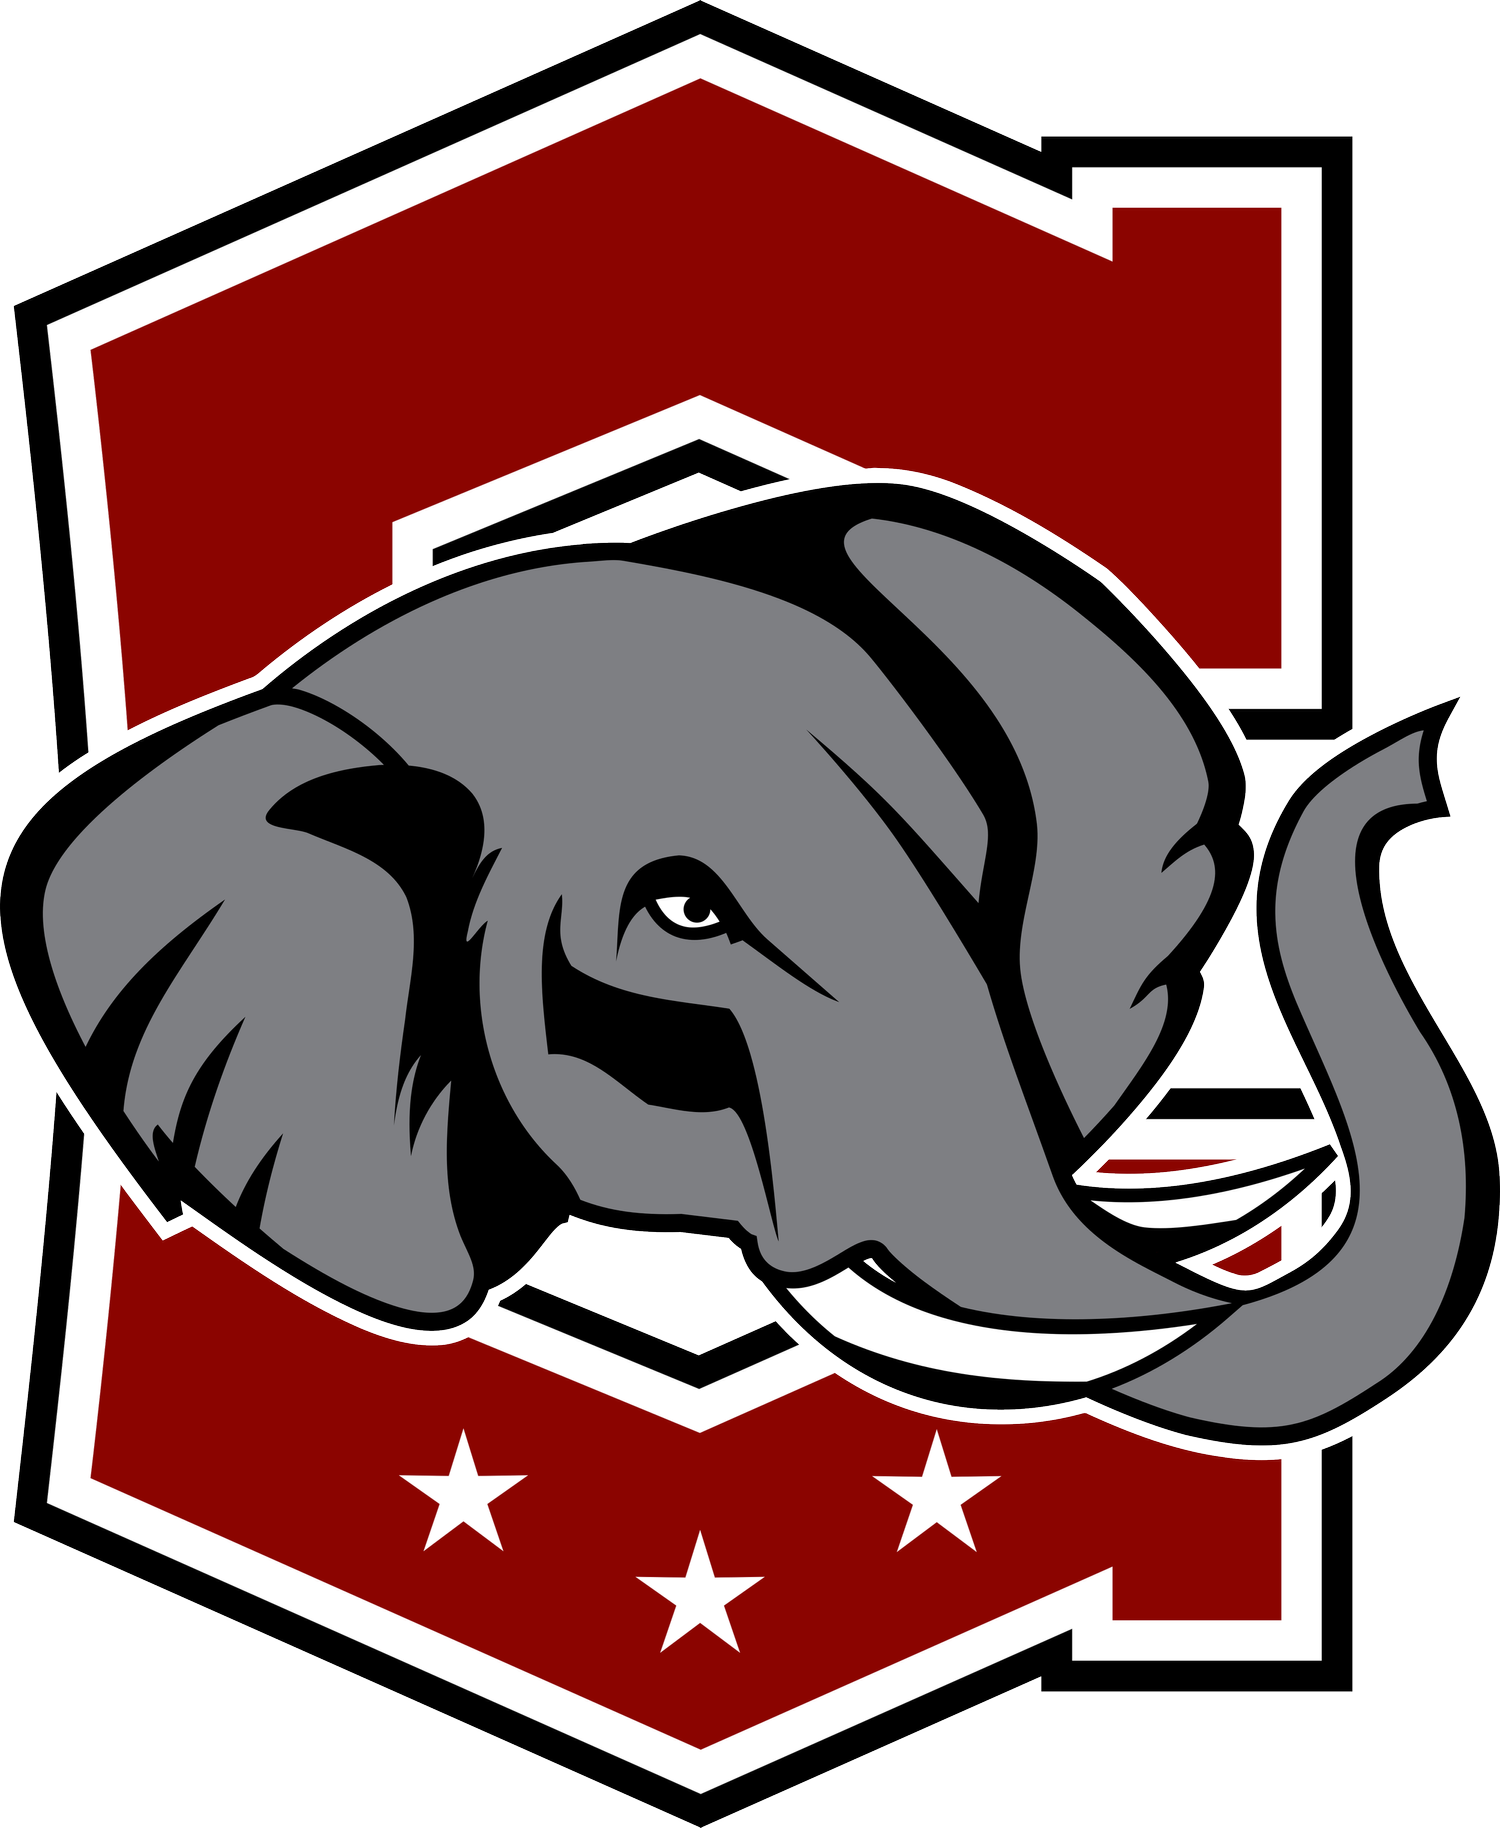 Cornell Republicans